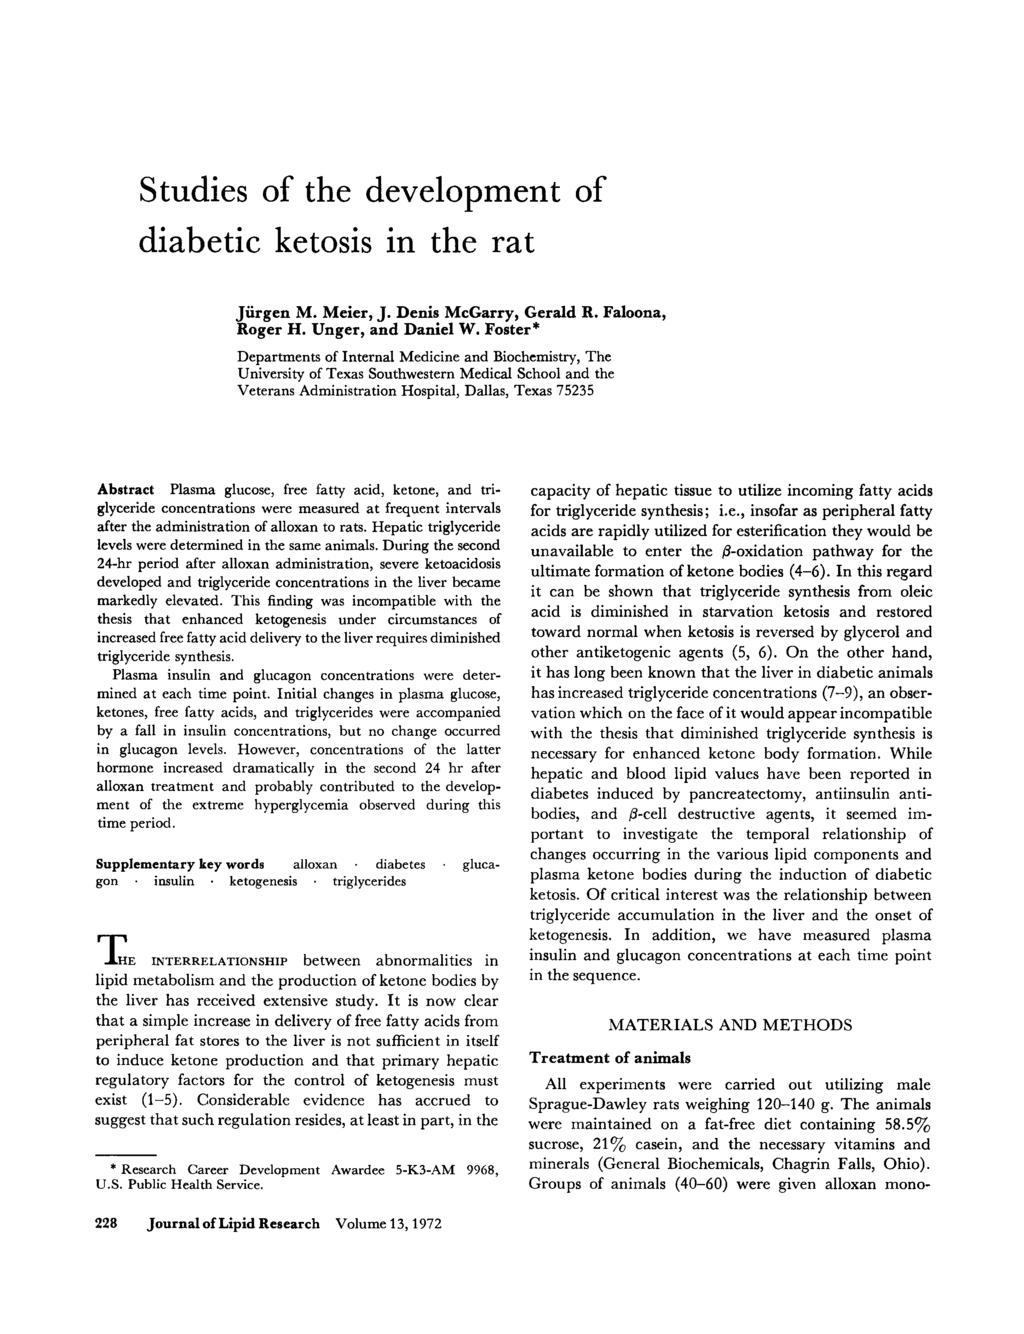 Studies of the development of dibetic ketosis in the rt Jurgen M. Meier, J. Denis McGrry, Gerld R. Floon, Roger H. Unger, nd Dniel W.